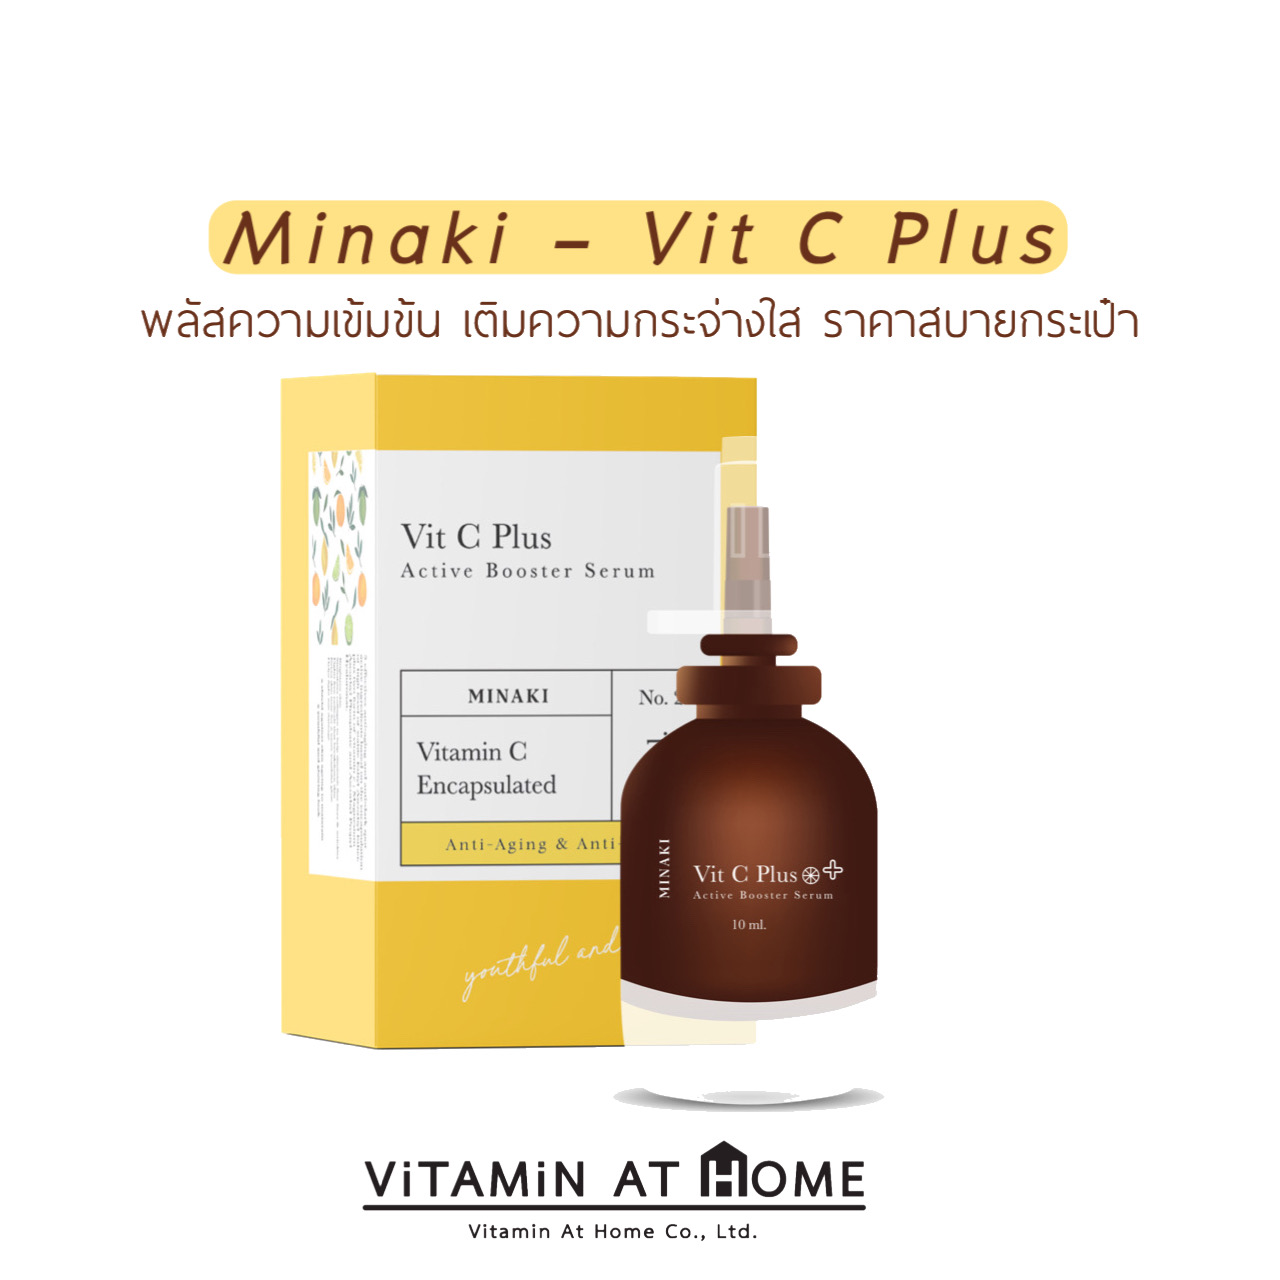 Minaki - Vit C Plus Active Booster Serum (10 ml)